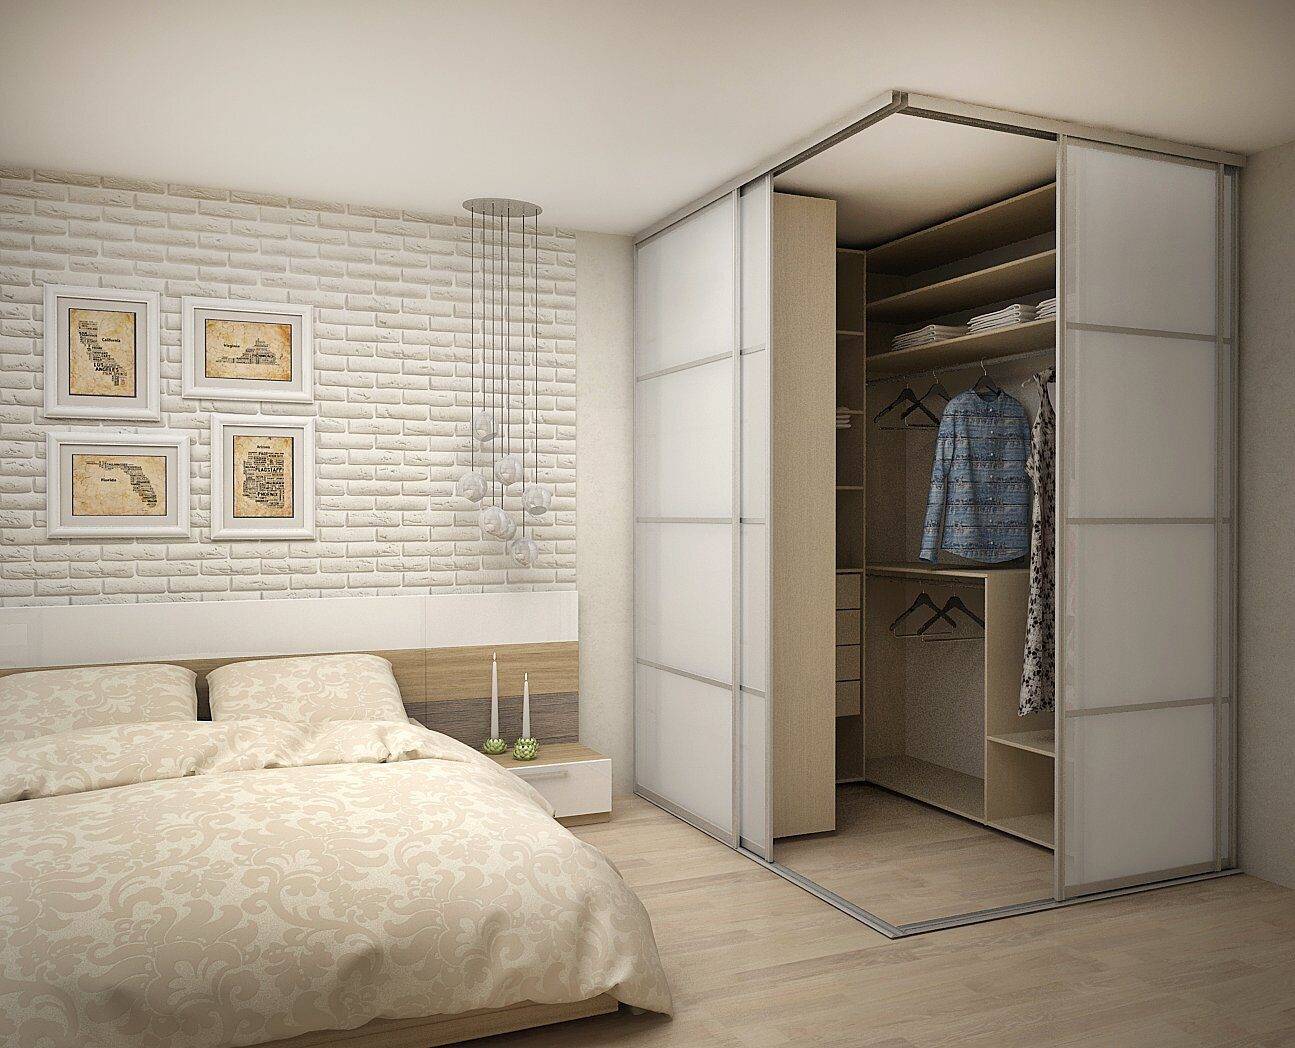 Гардеробная в спальне - варианты размещения и идеи дизайна раздевалок или гардеробов